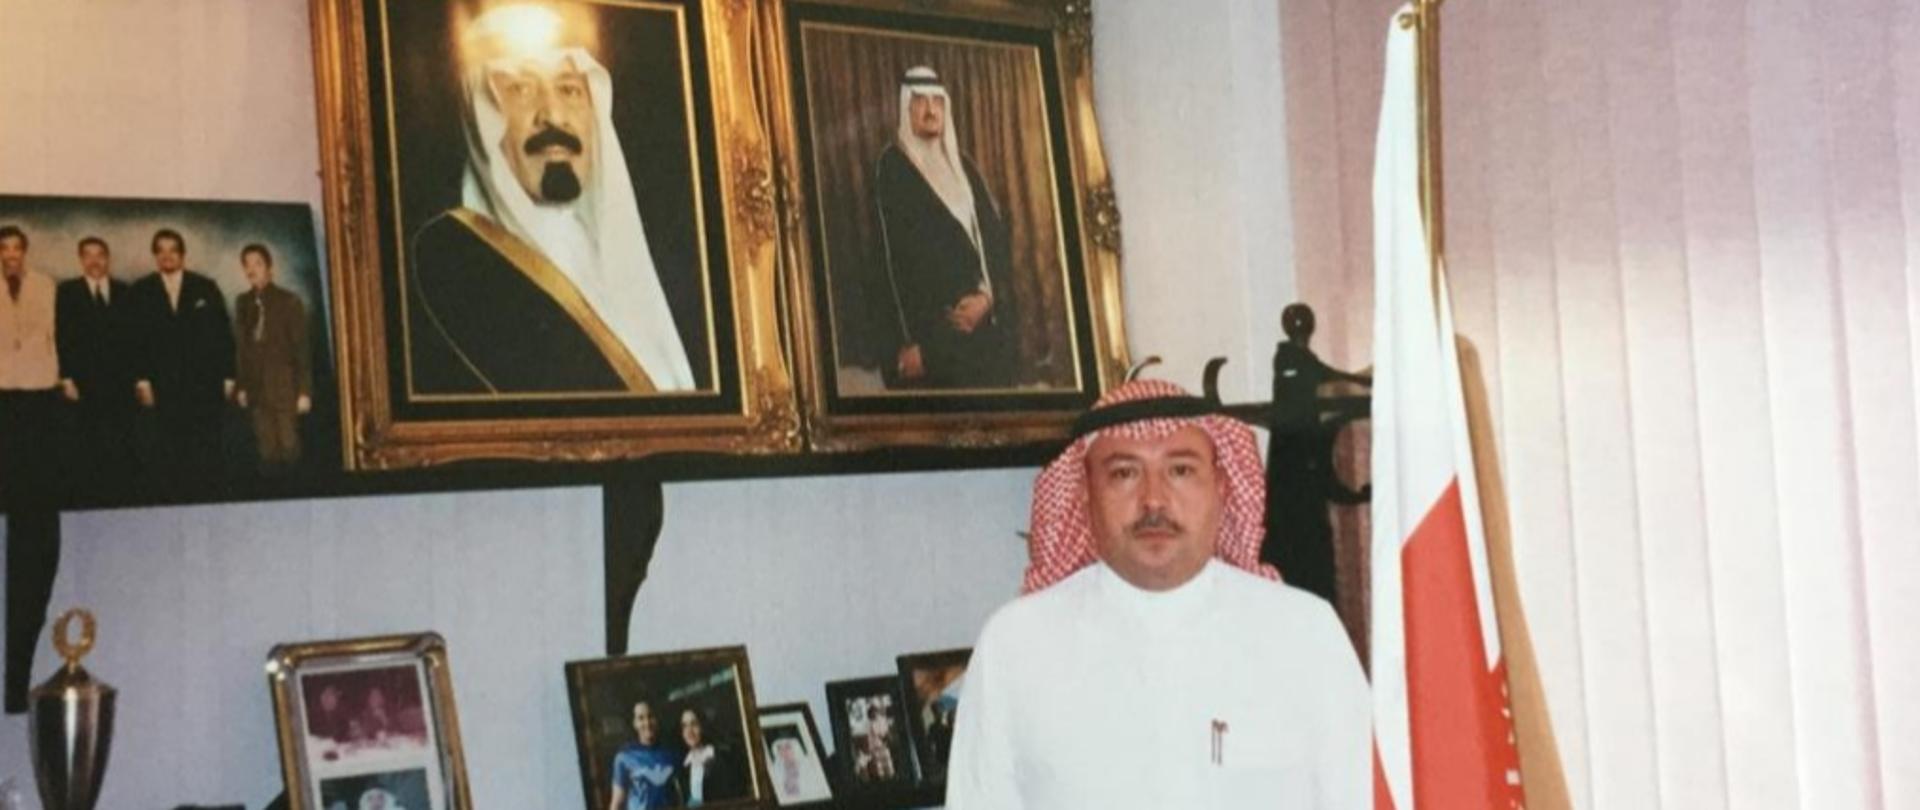 Honorary Consul Jeddah 1